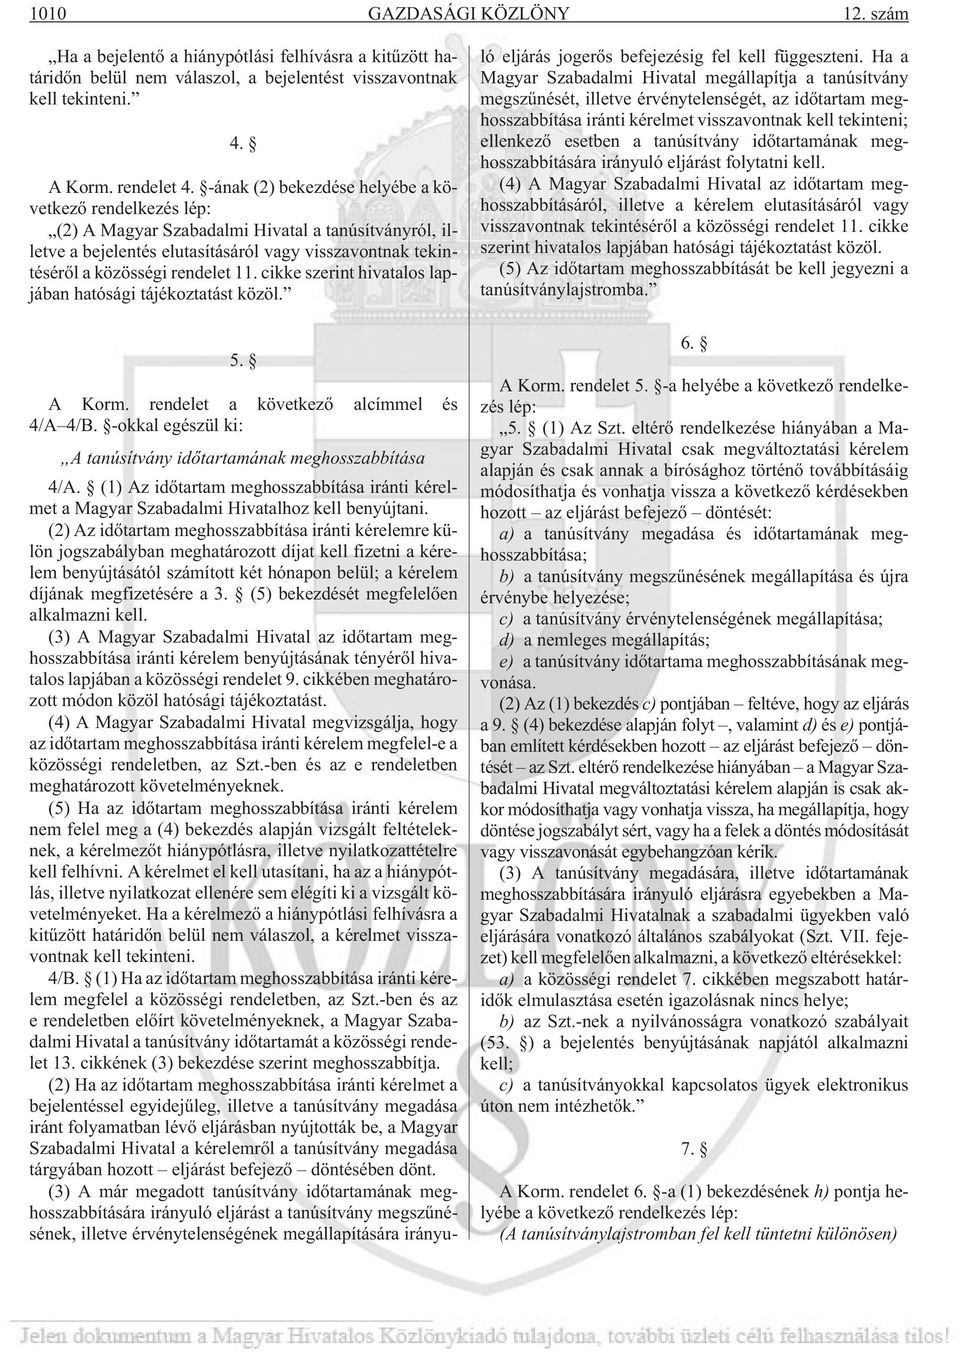 cikke szerint hivatalos lapjában hatósági tájékoztatást közöl. 5. A Korm. rendelet a következõ alcímmel és 4/A 4/B. -okkal egészül ki: A tanúsítvány idõtartamának meghosszabbítása 4/A.